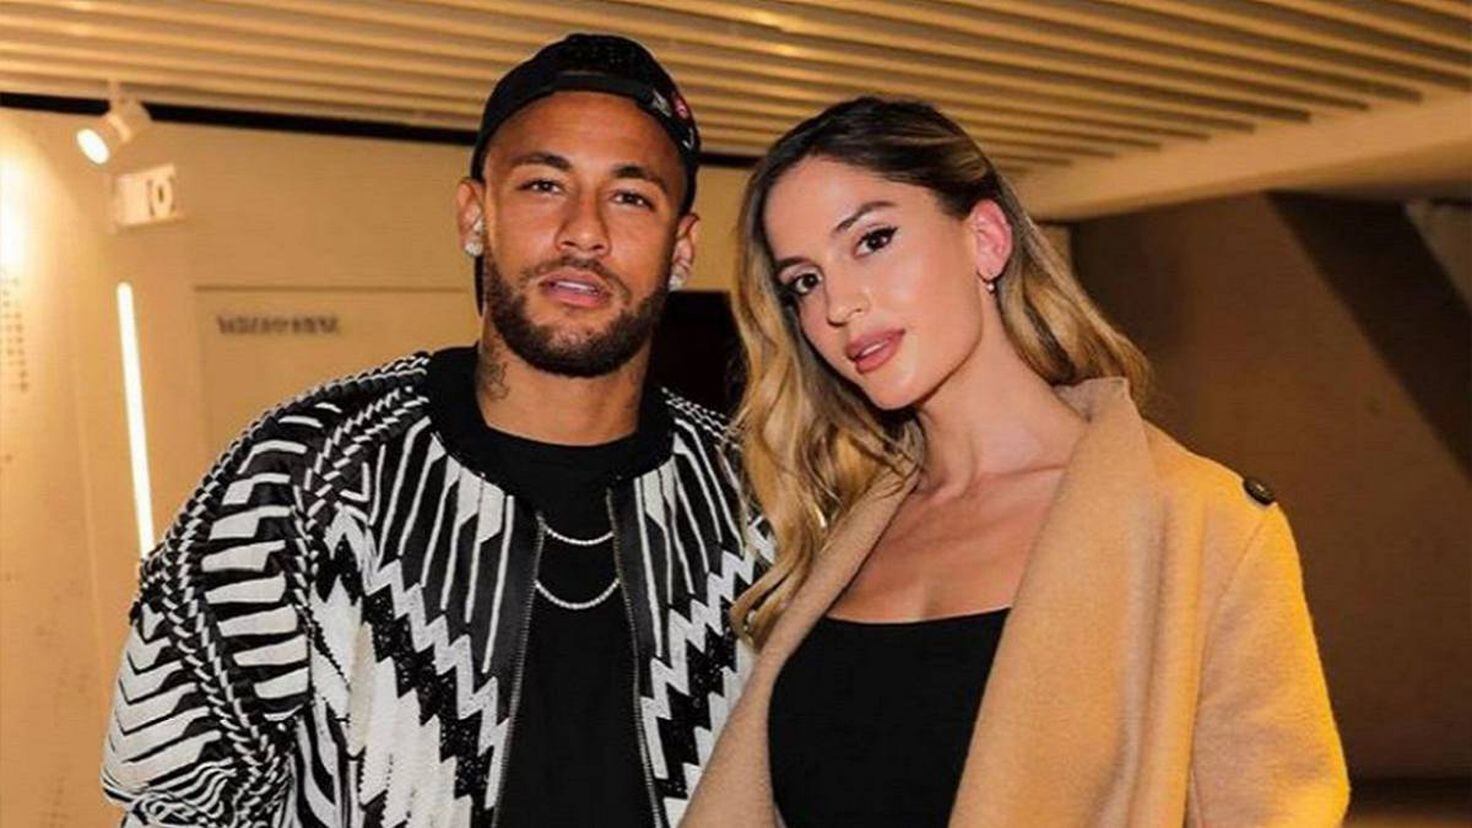 Las pistas que hacen pensar en un romance entre Neymar y Natalia Barulich -  Tikitakas